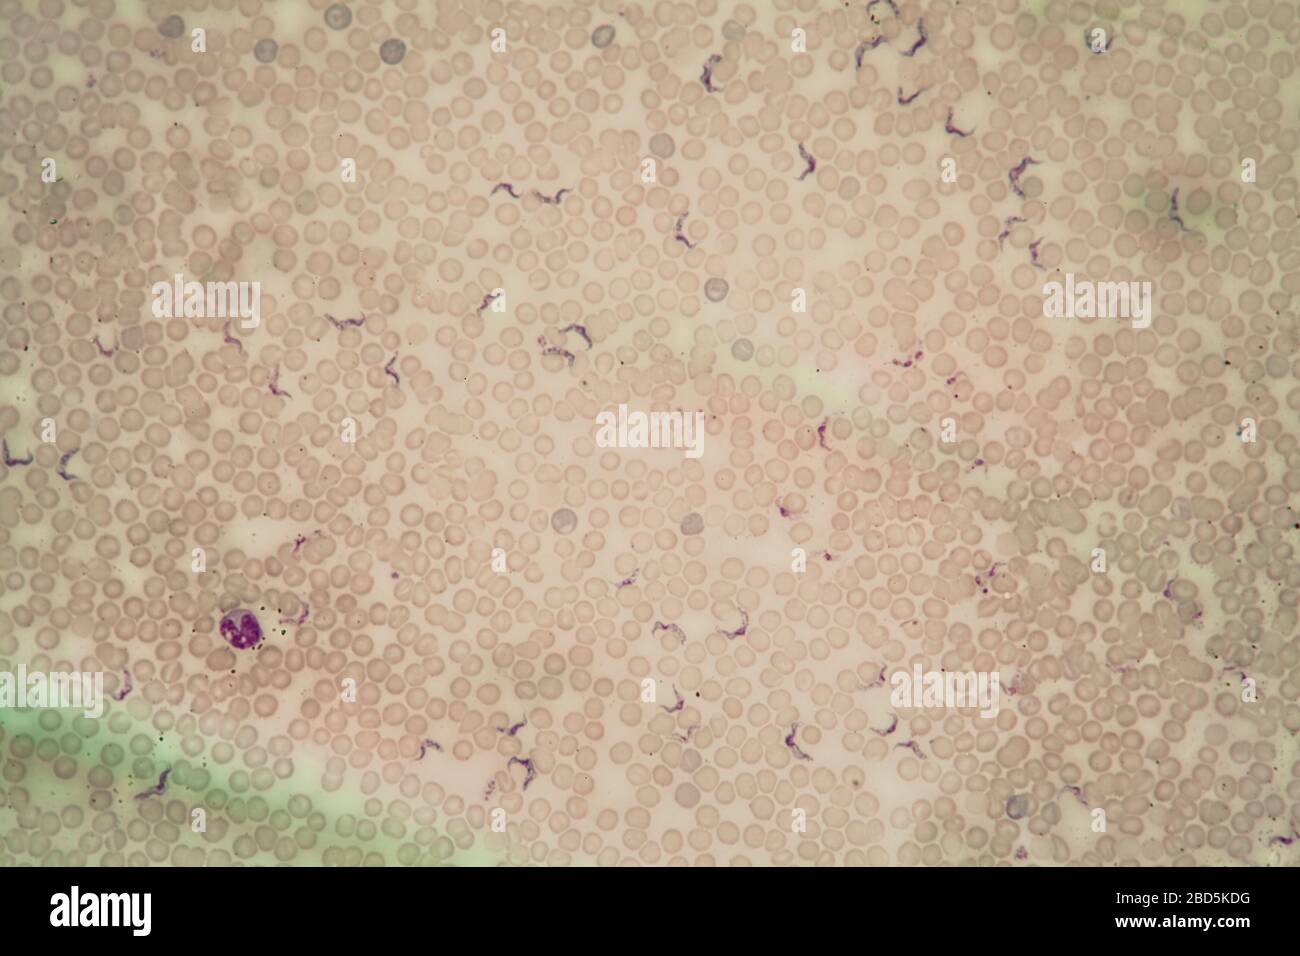 Trypanosomes des parasites de la maladie de Chagas dans le sang 400 fois Banque D'Images